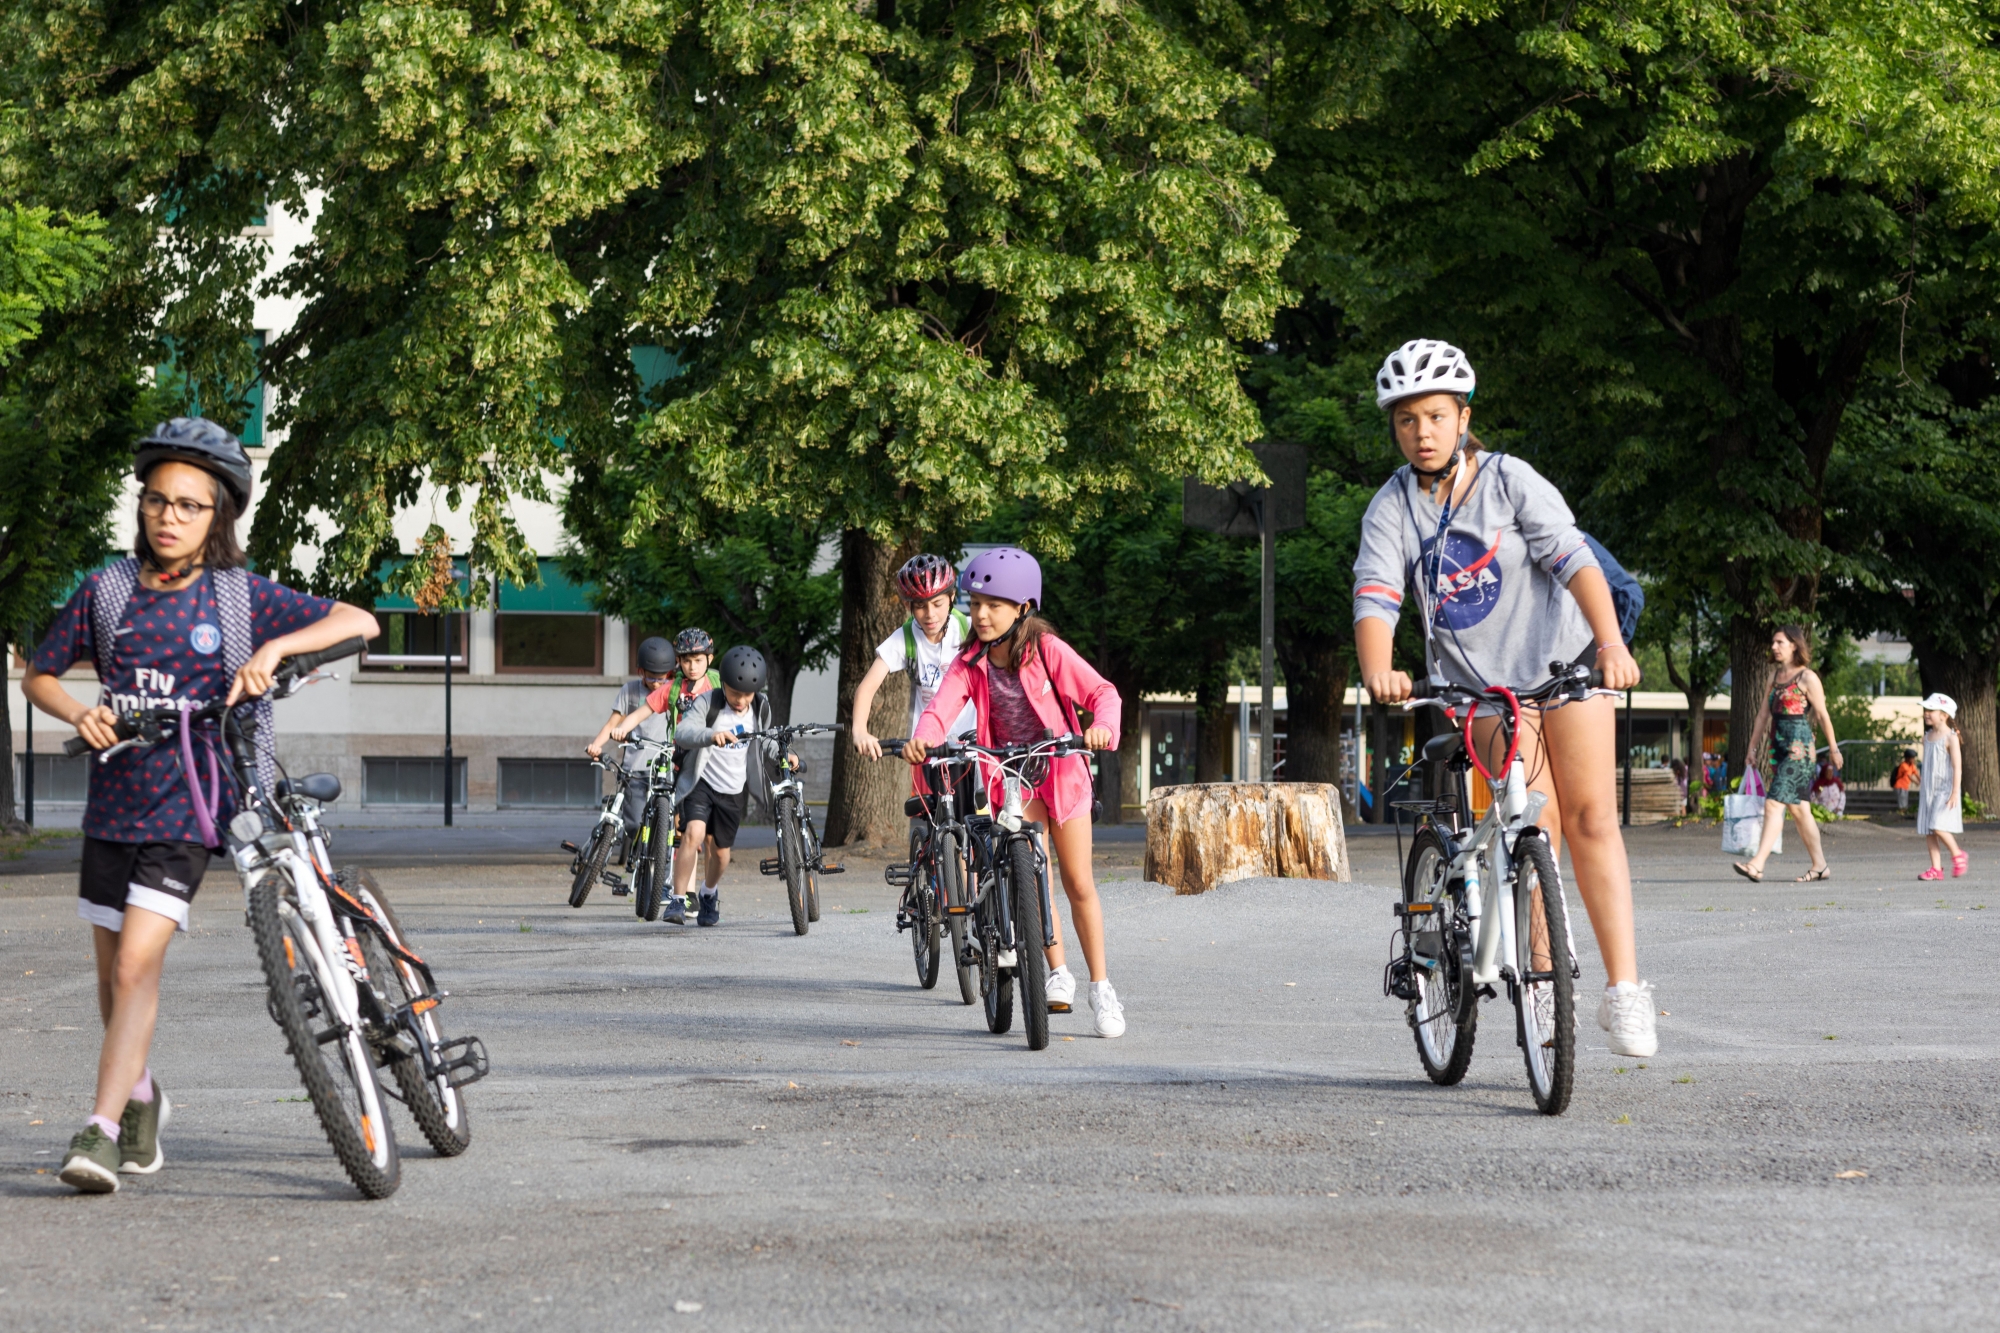 Dans le domaine de la mobilité douce, les écoles de Martigny veulent renforcer et encourager l'accès à l'école à pied, à vélo ou en trottinette.